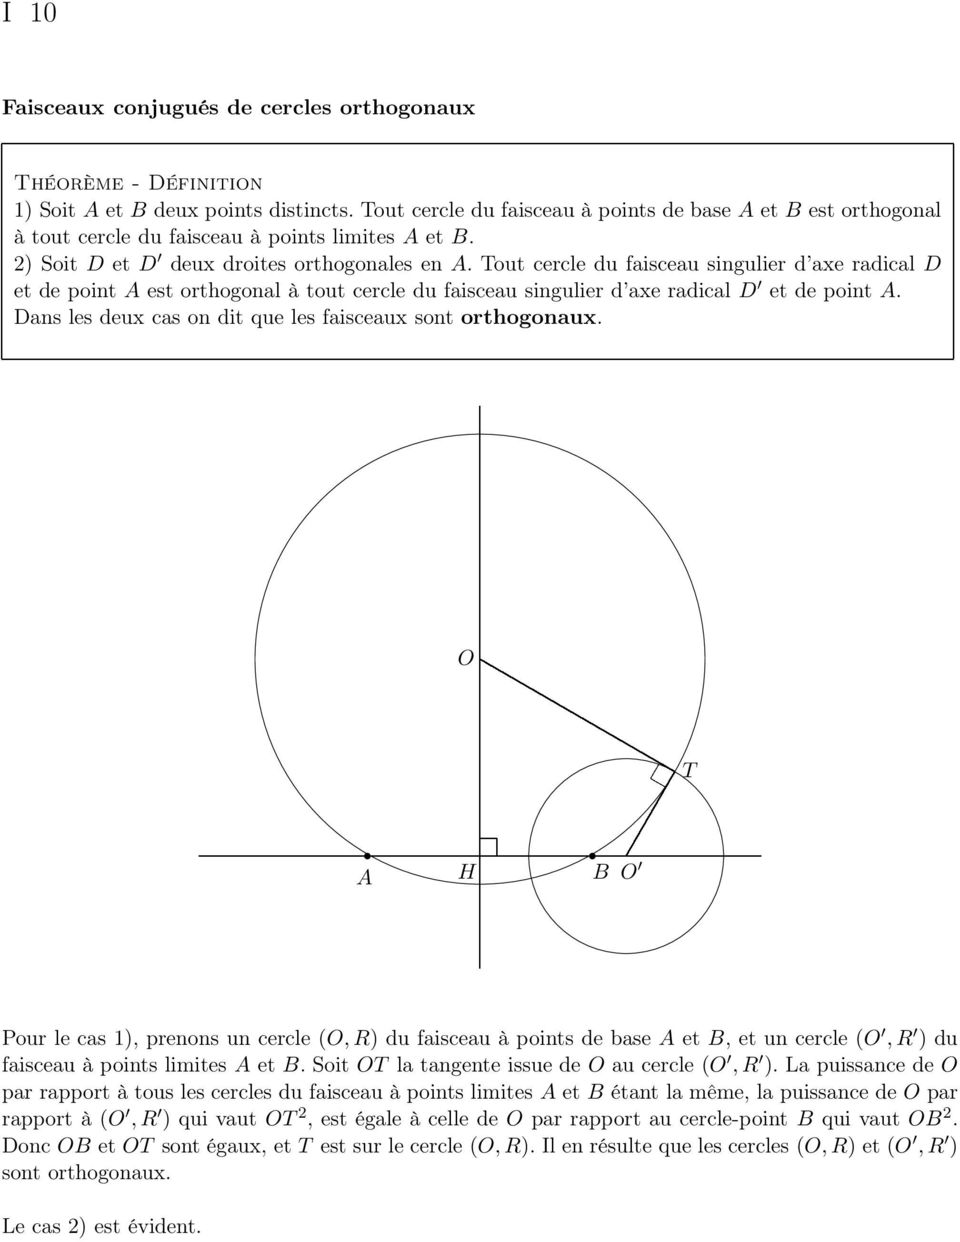 Tout cercle du faisceau singulier d axe radical D et de point A est orthogonal à tout cercle du faisceau singulier d axe radical D et de point A.